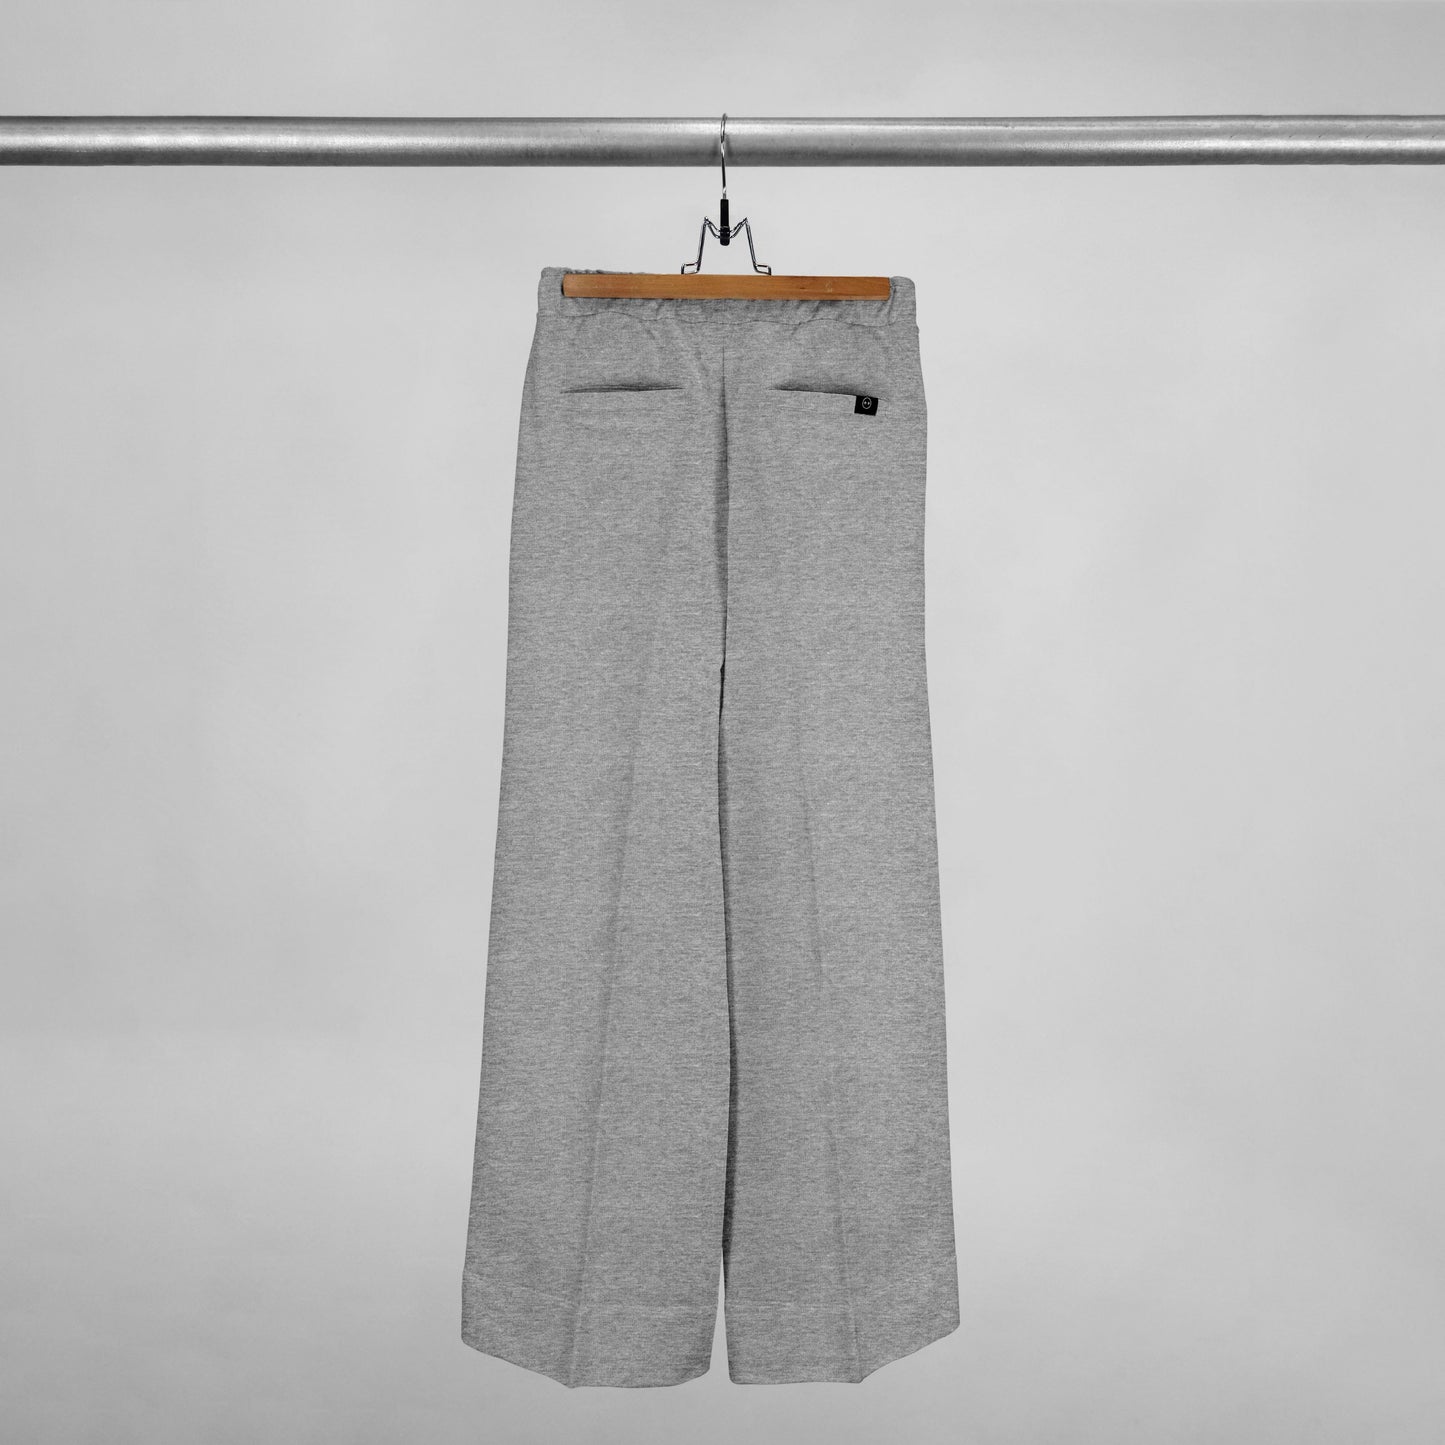 Parte trasera de pantalón bota ancha con bolsillos traseros color gris